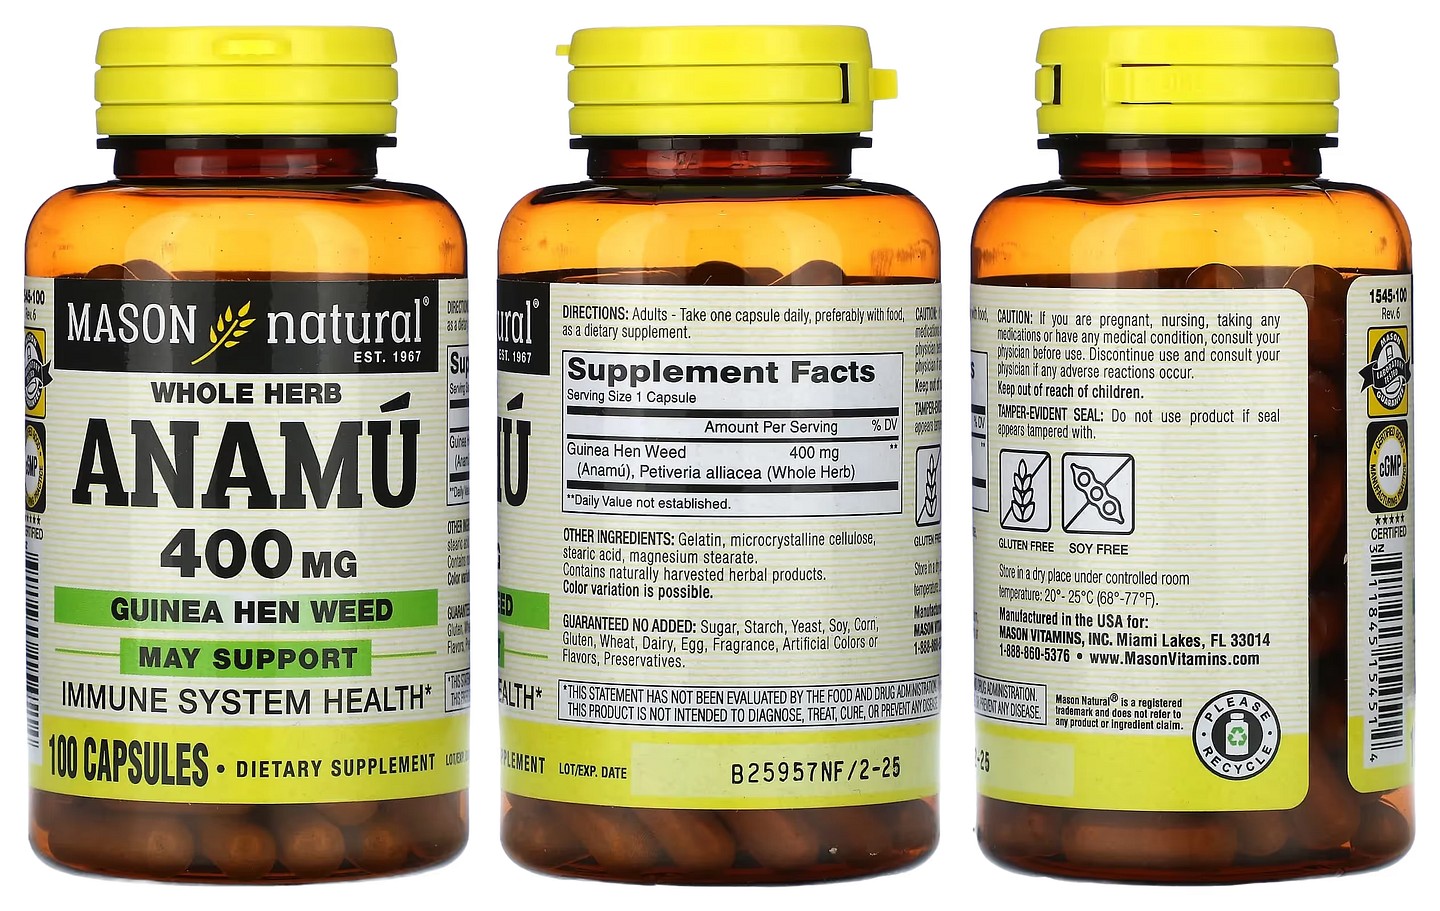 Mason Natural, Whole Herb Anamu packaging